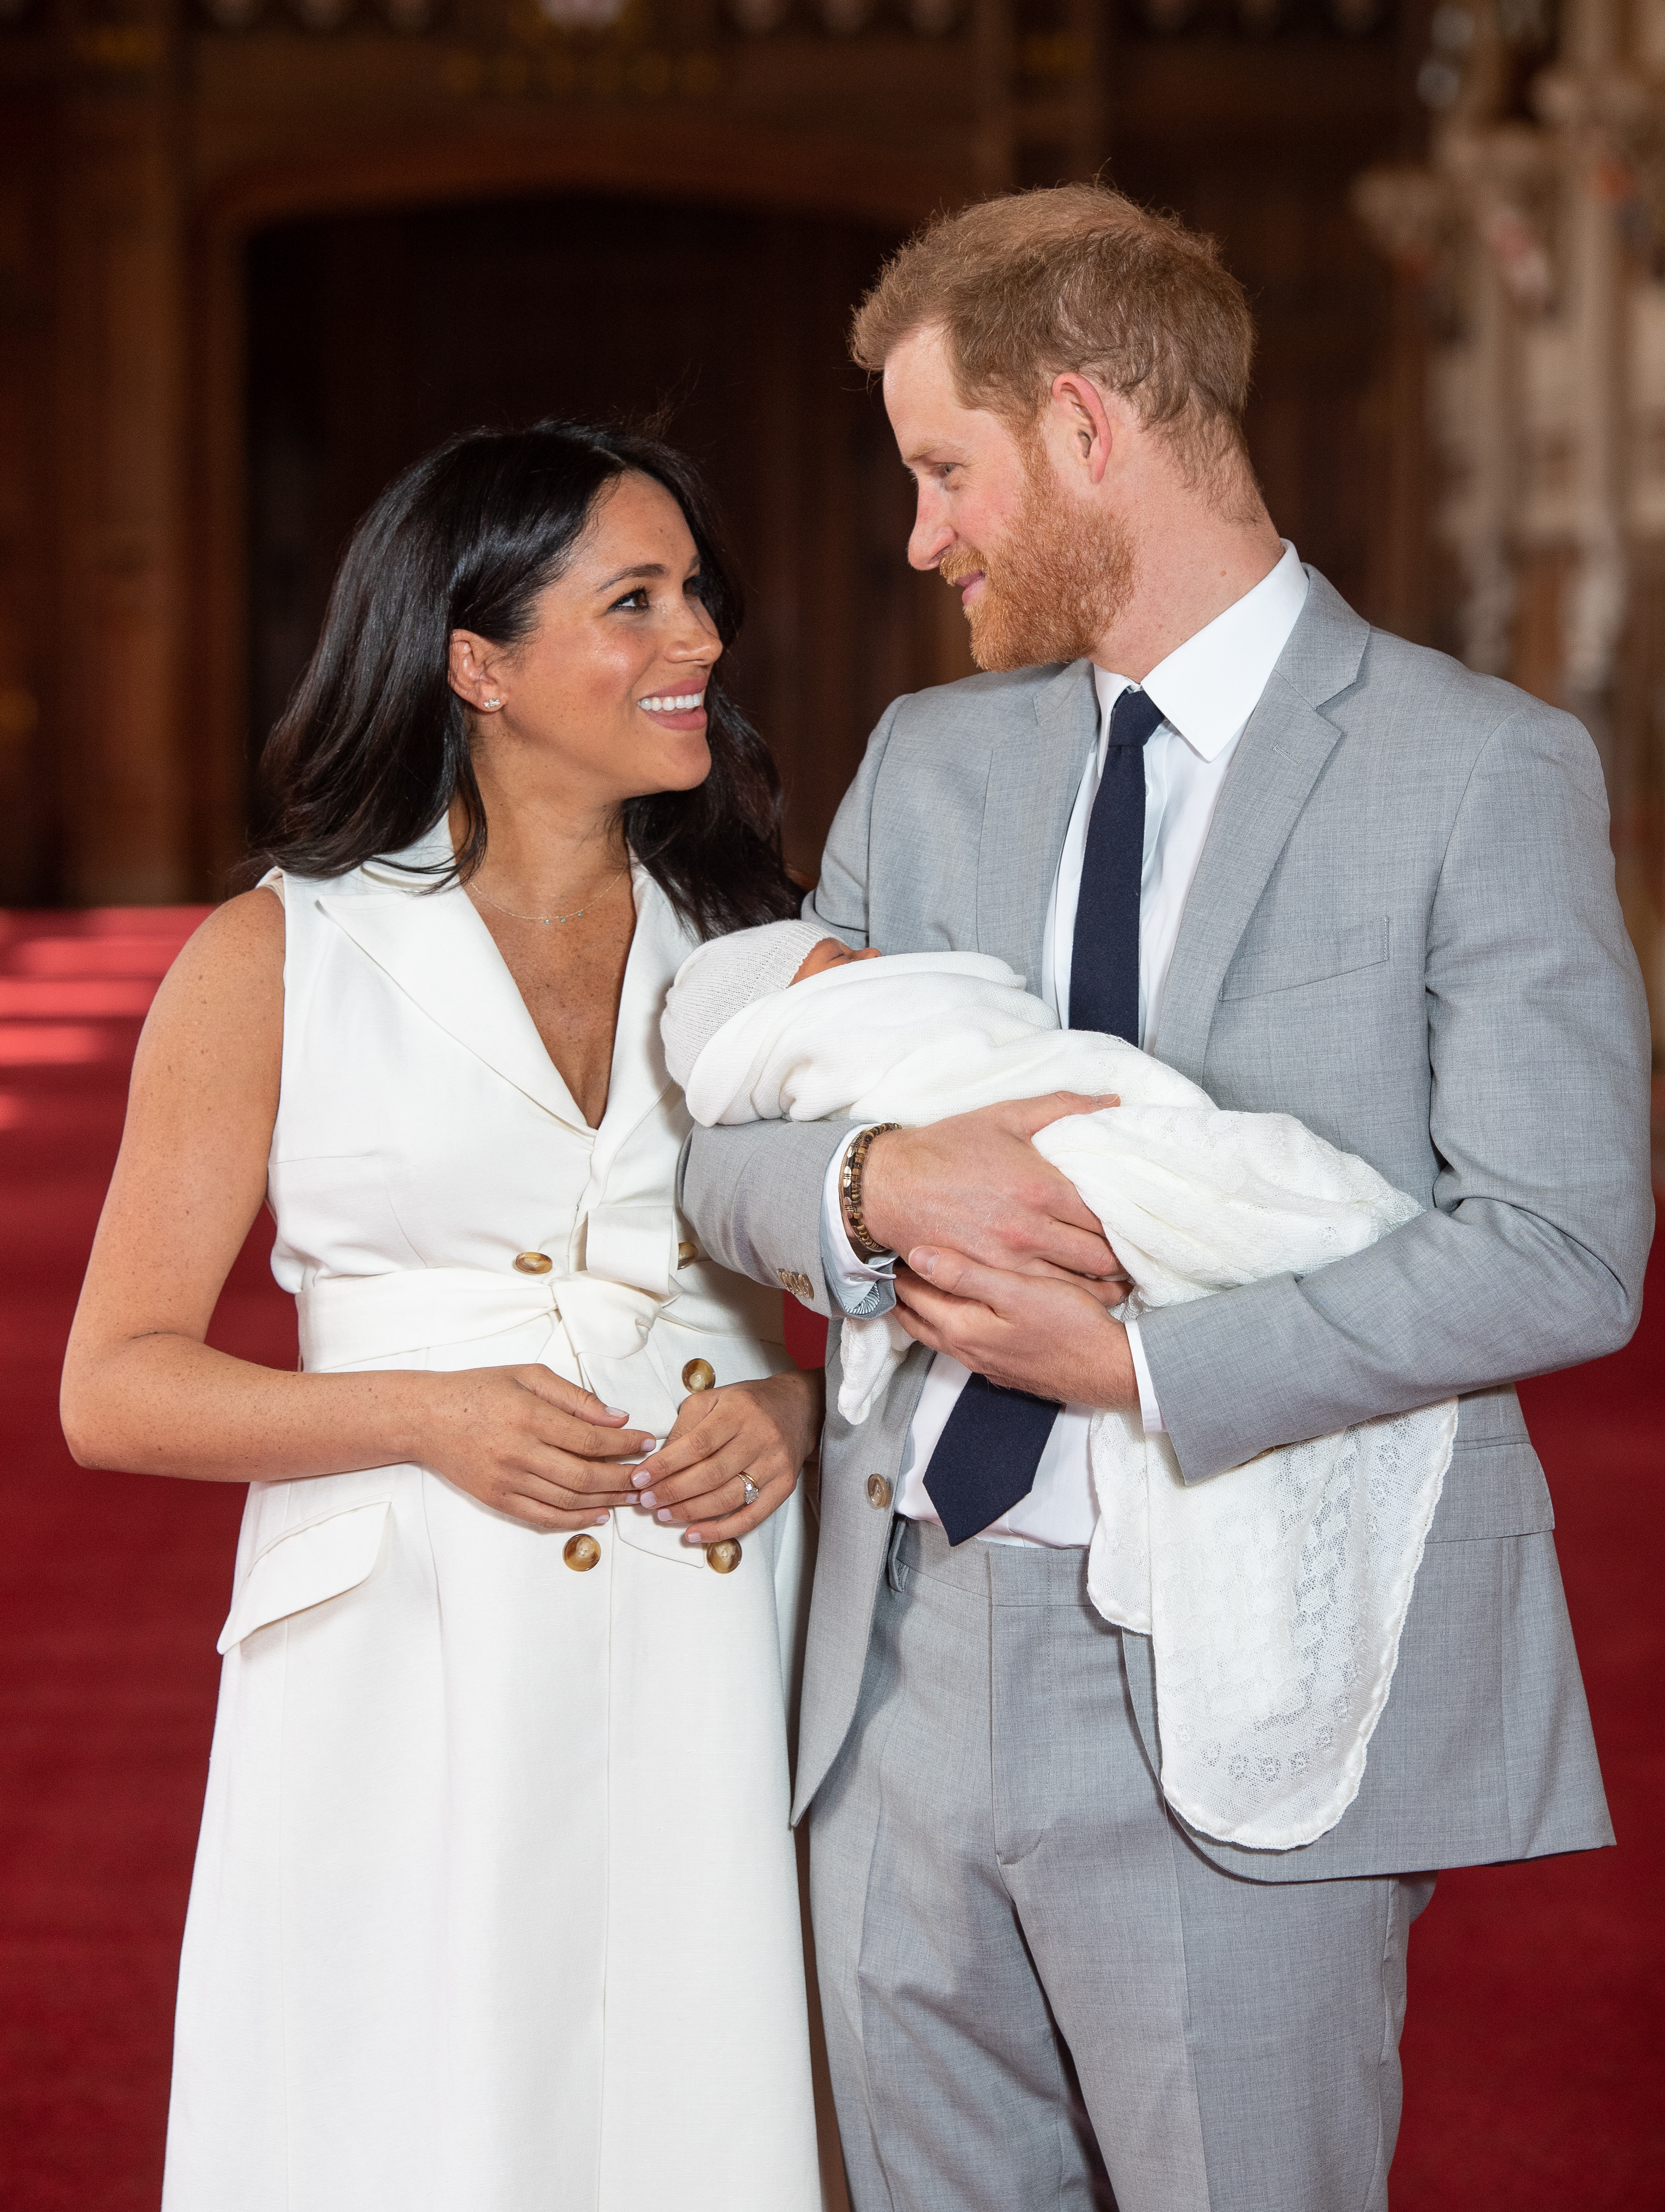 Le prince Harry et Meghan Markle posent avec le nouveau-né Archie lors d'un photocall dans le St George's Hall du château de Windsor, le 8 mai 2019 à Windsor, en Angleterre | Source : Getty Images